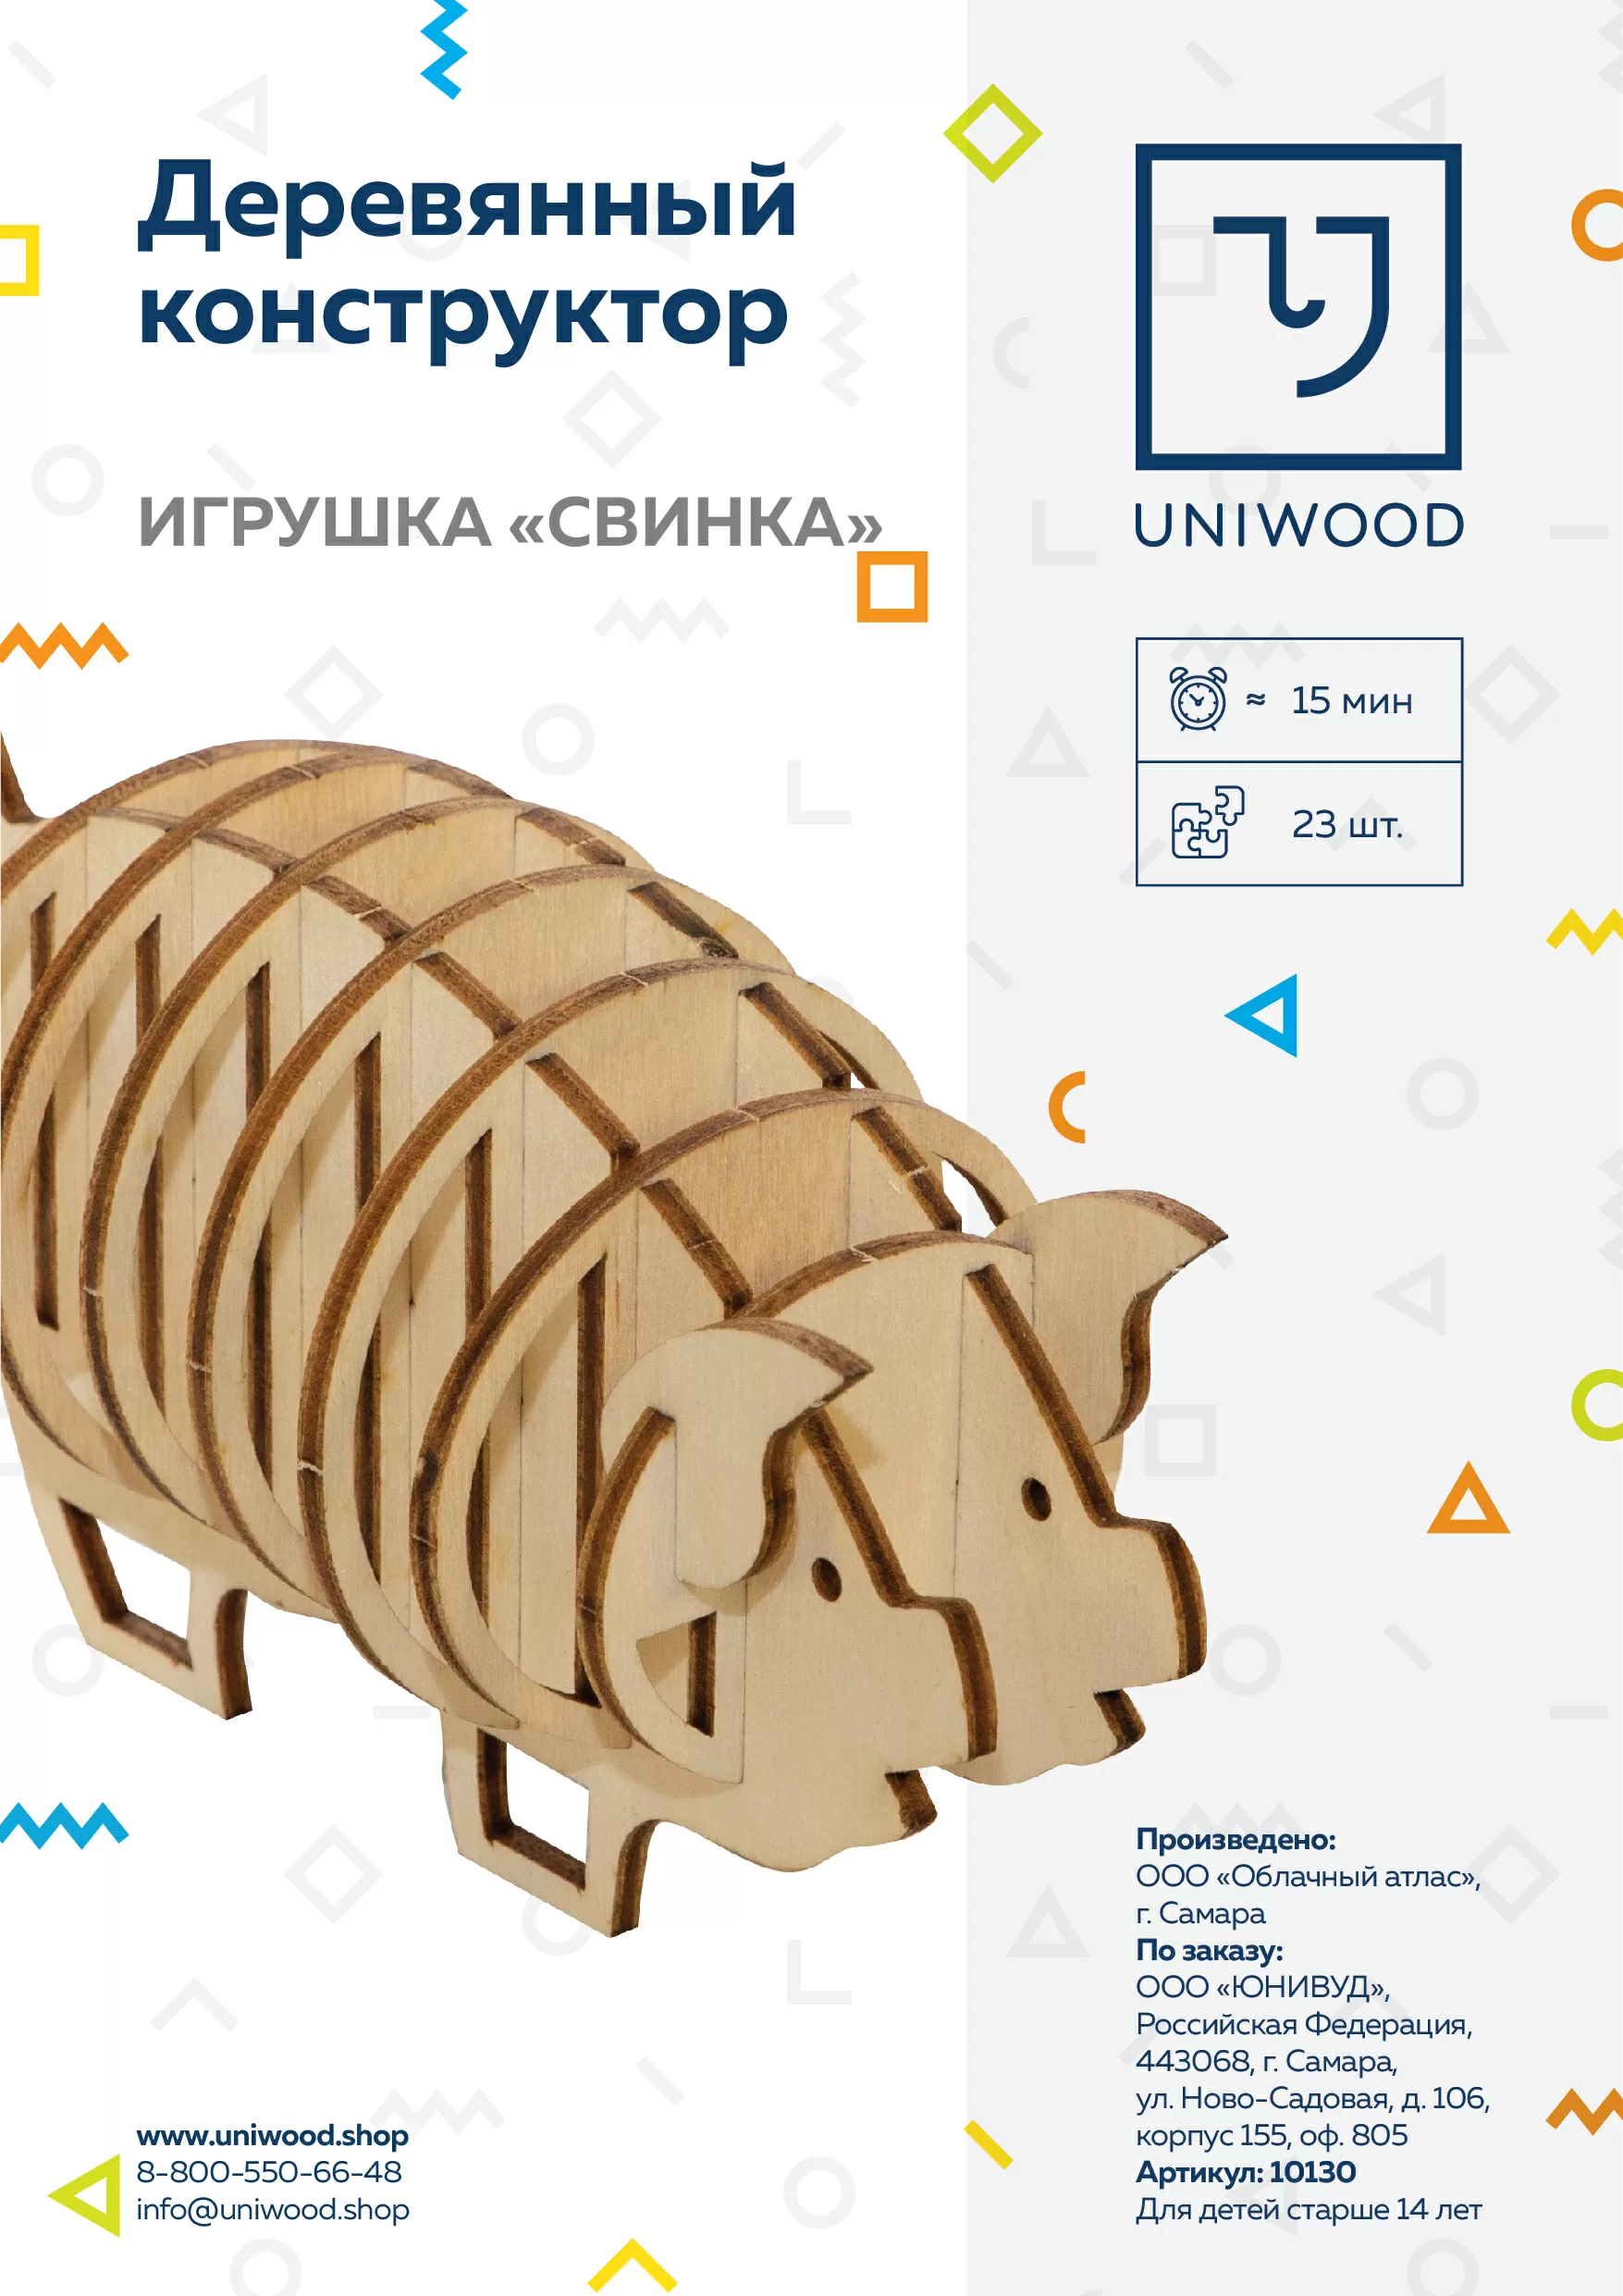 Деревянный конструктор Копилка-свинка